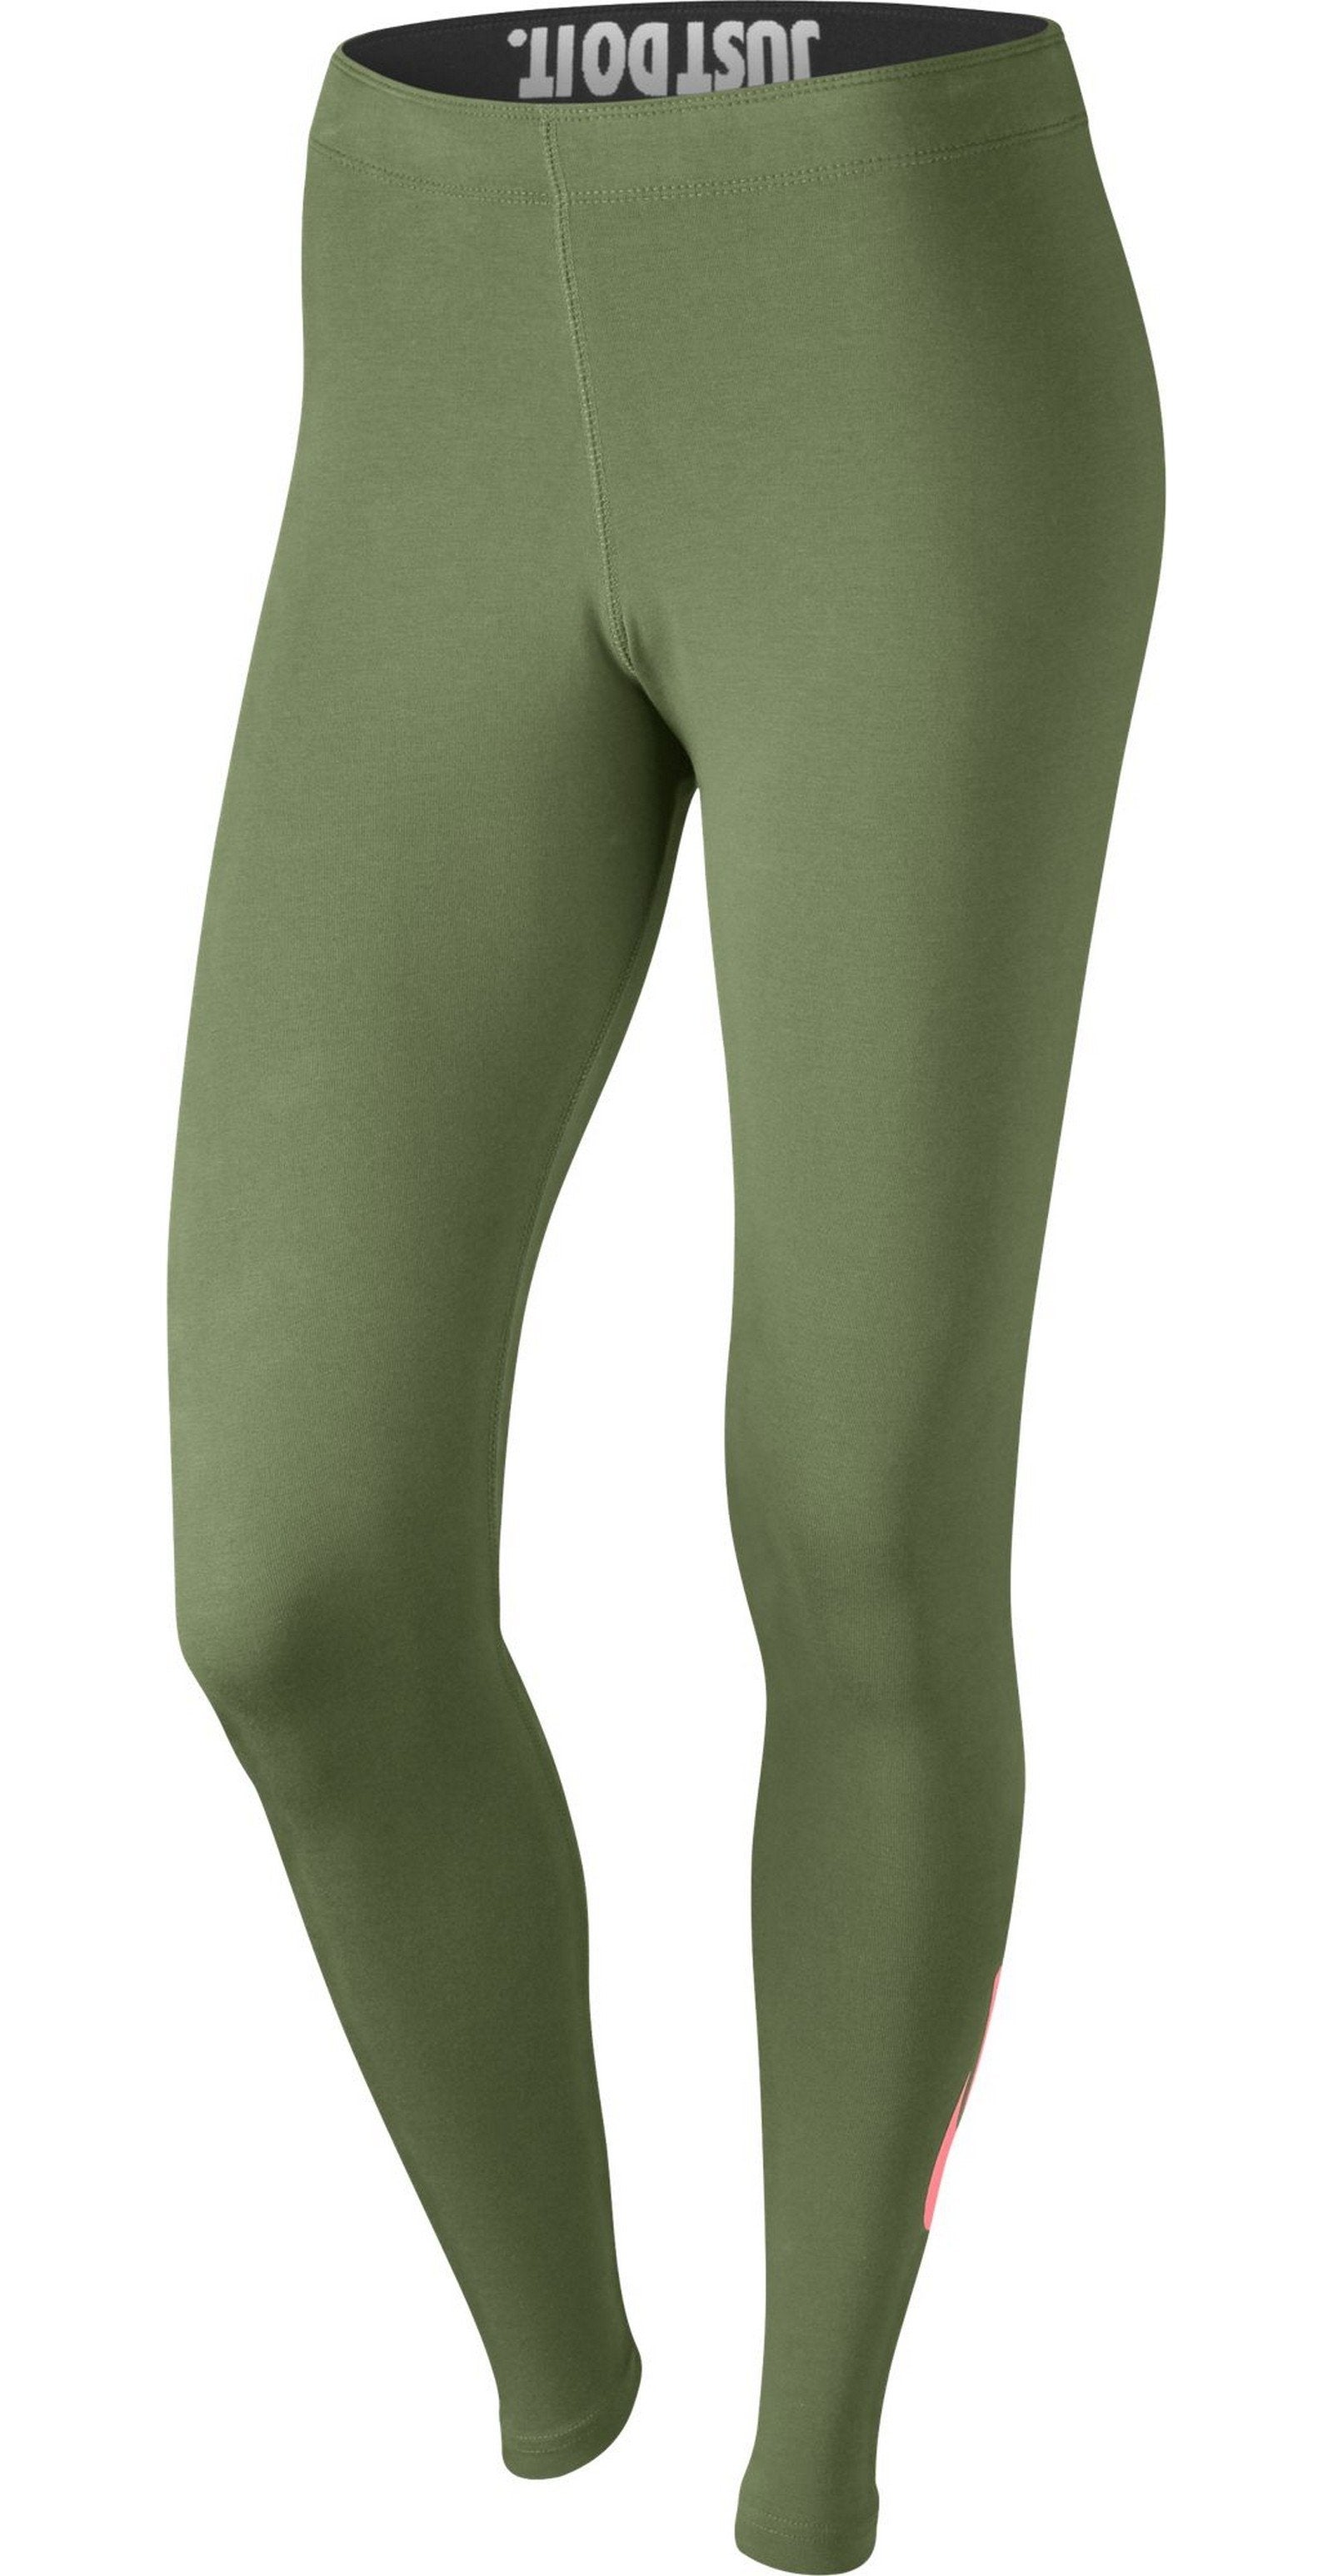 green nike tights